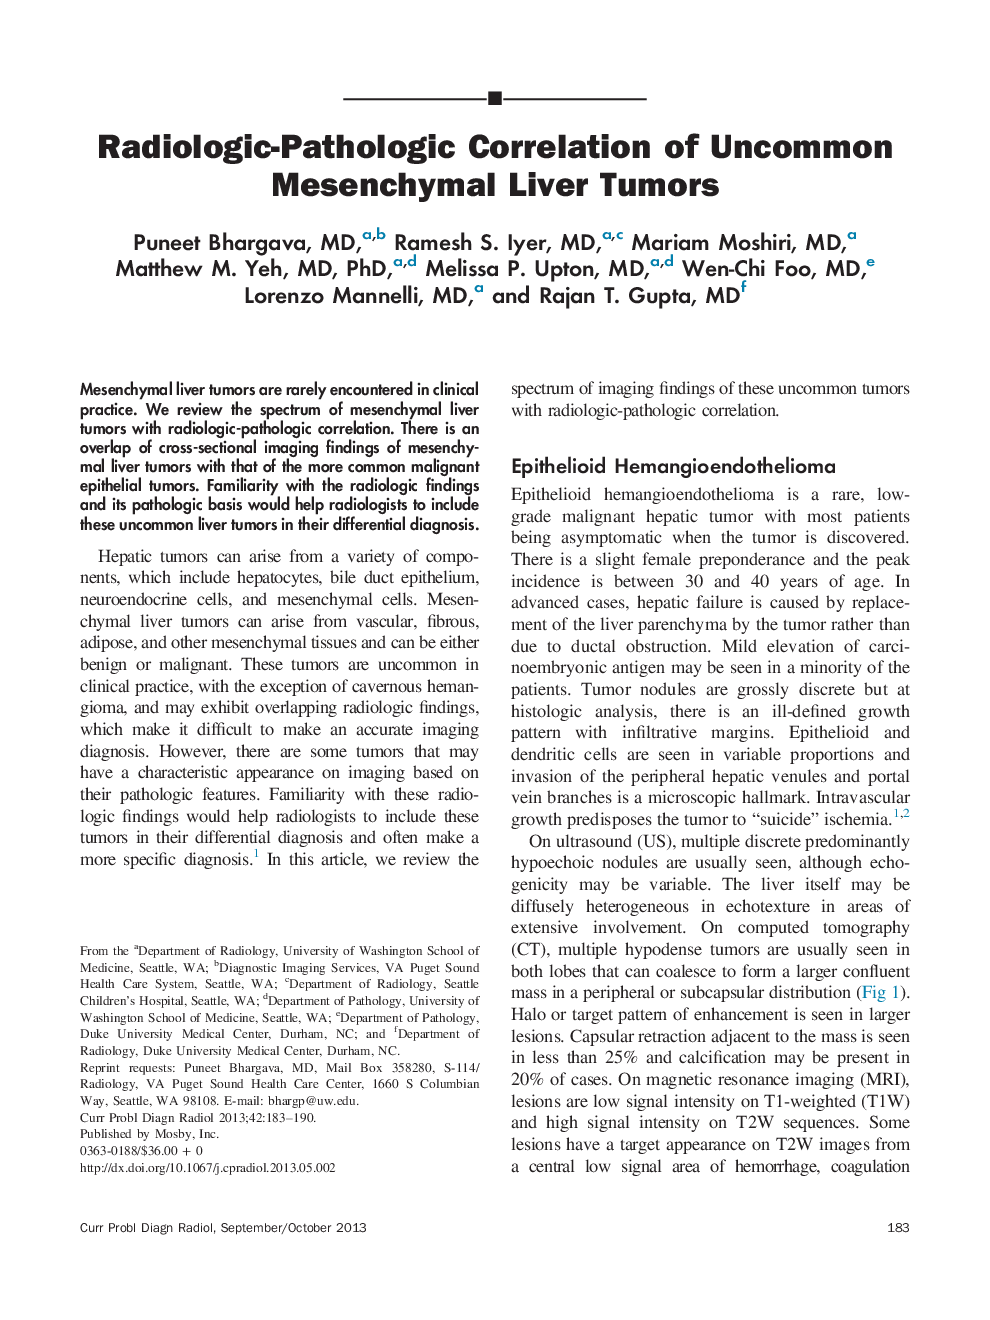 Radiologic-Pathologic Correlation of Uncommon Mesenchymal Liver Tumors